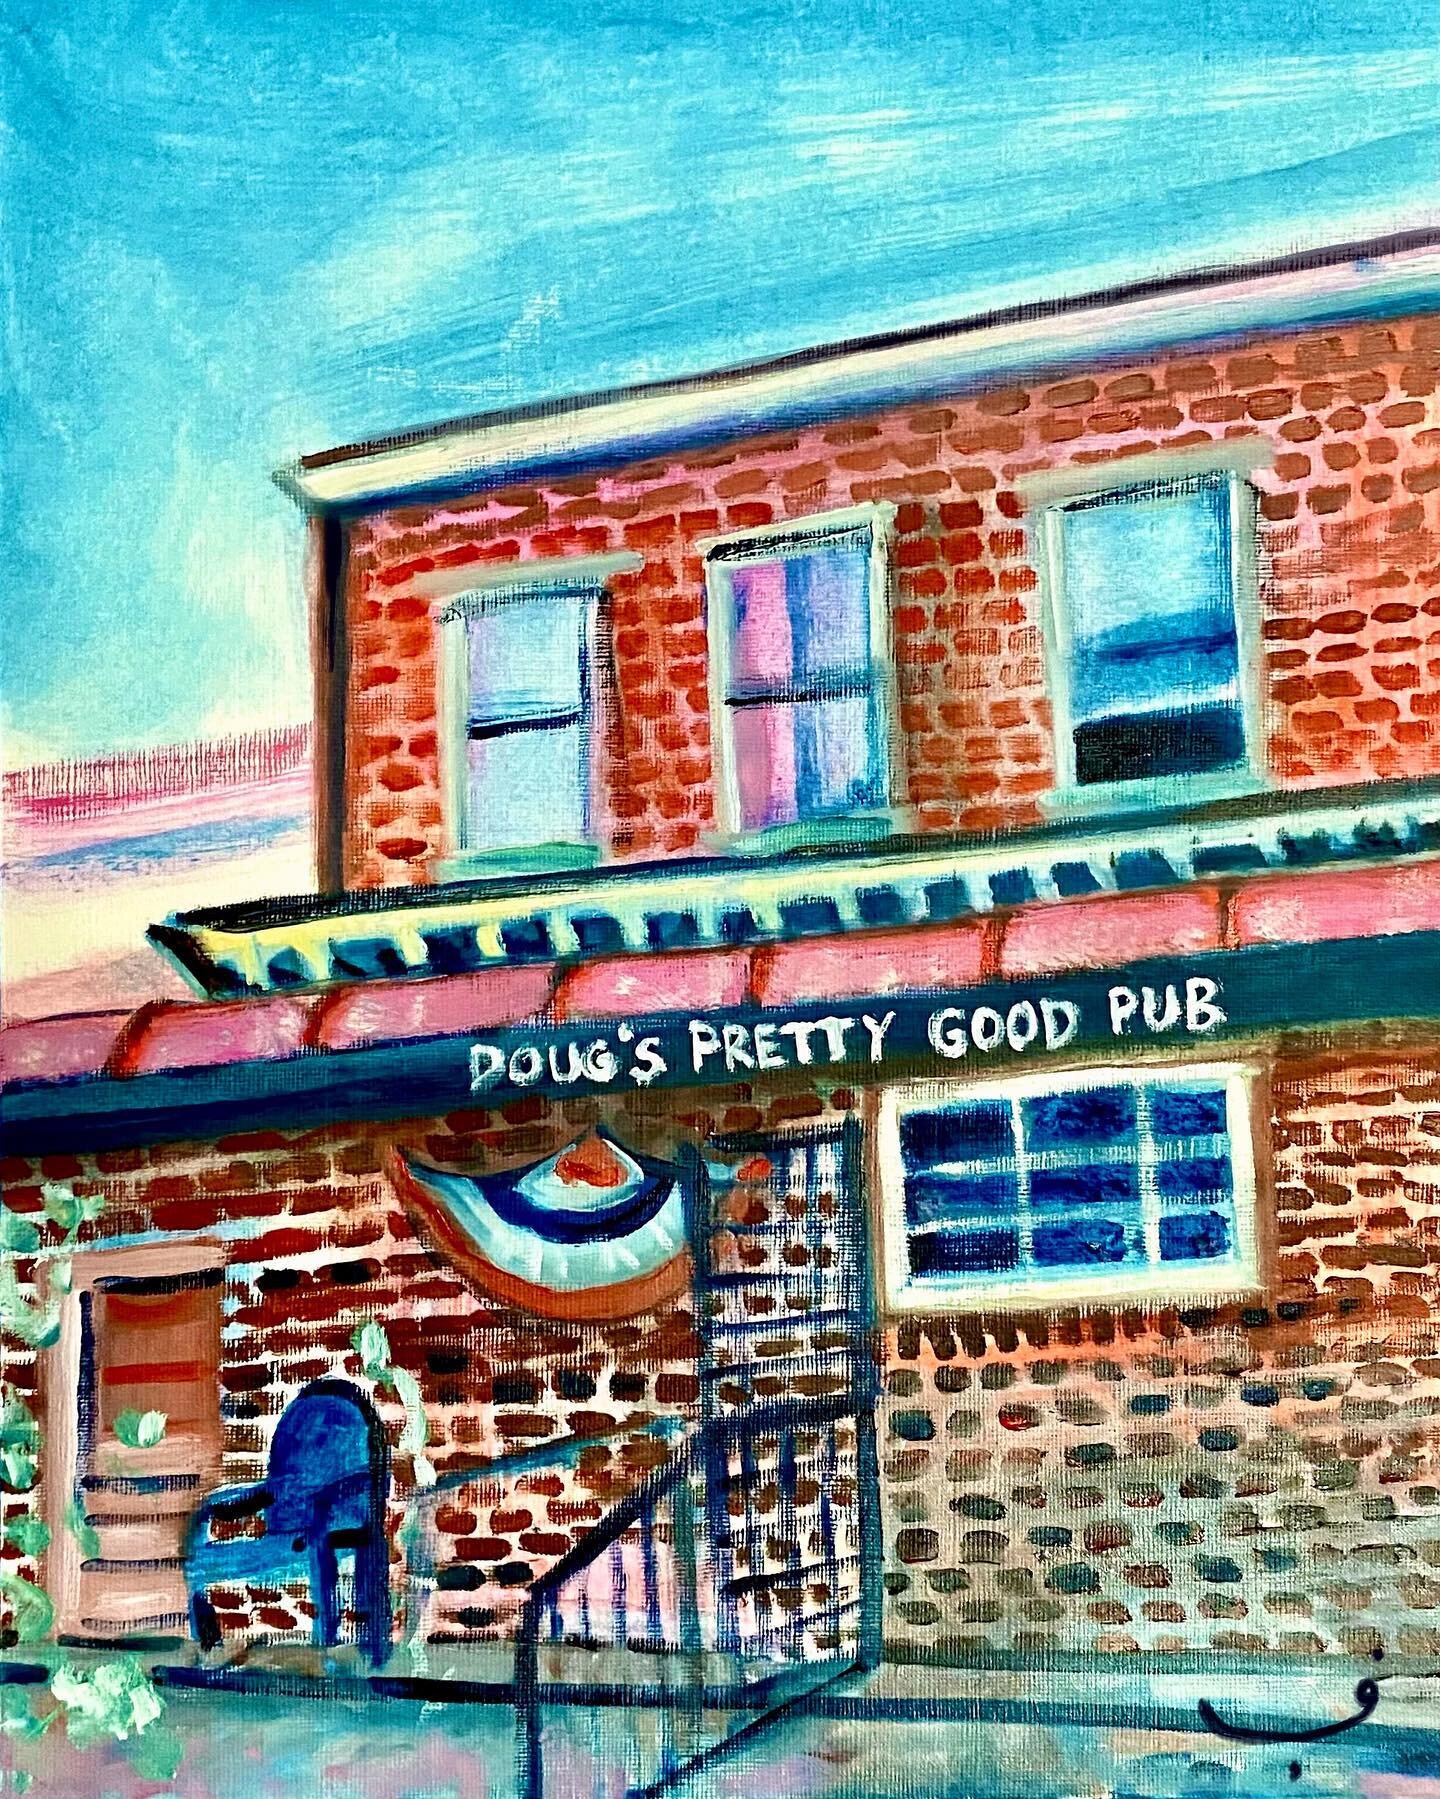 Doug&rsquo;s Pretty Good Pub 🌚
Oil on Canvas paper
40 x 30 cm